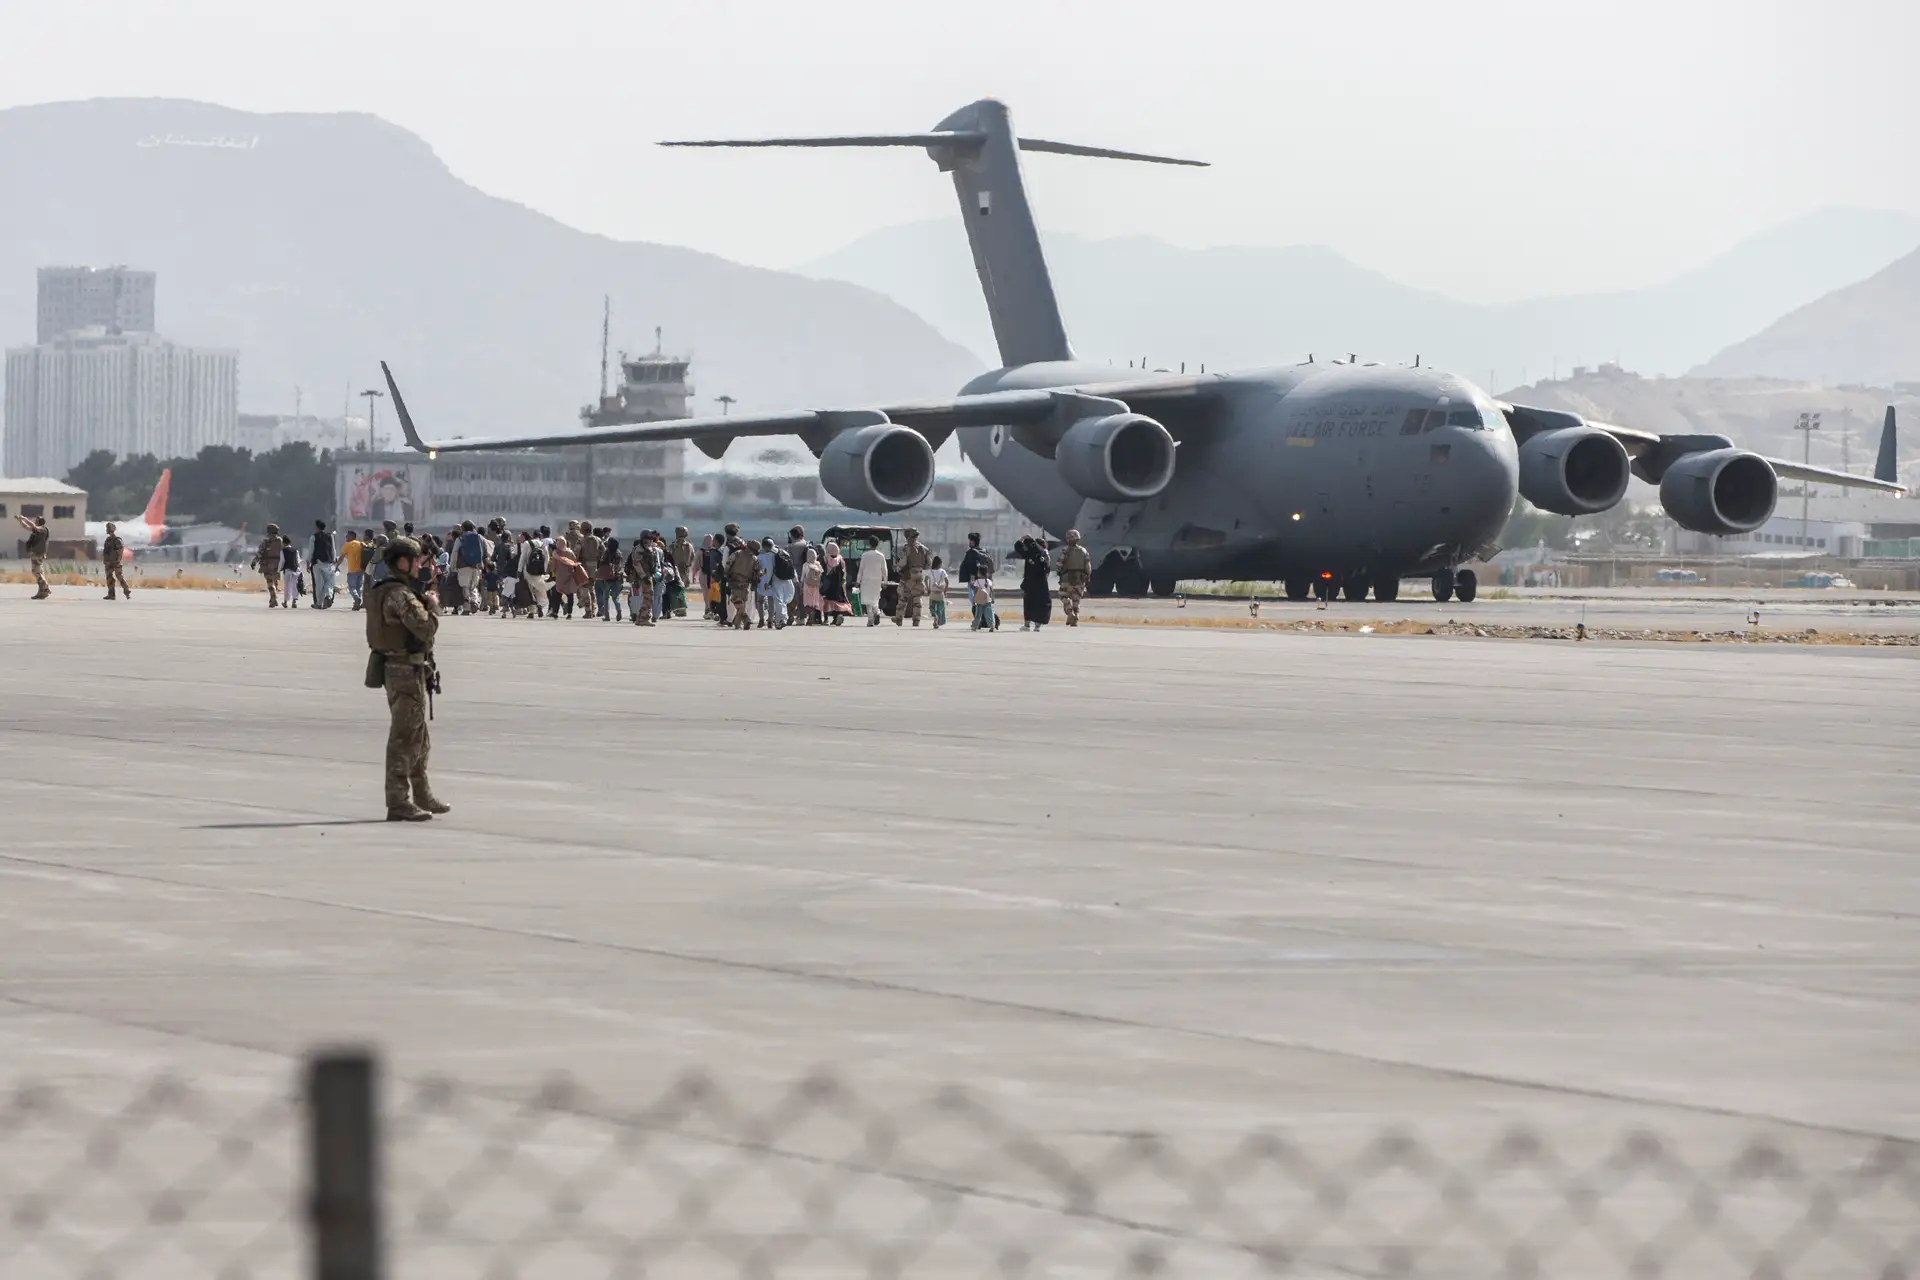 Afeganistão. Ministra espanhola alerta para risco de atentado no aeroporto de Cabul